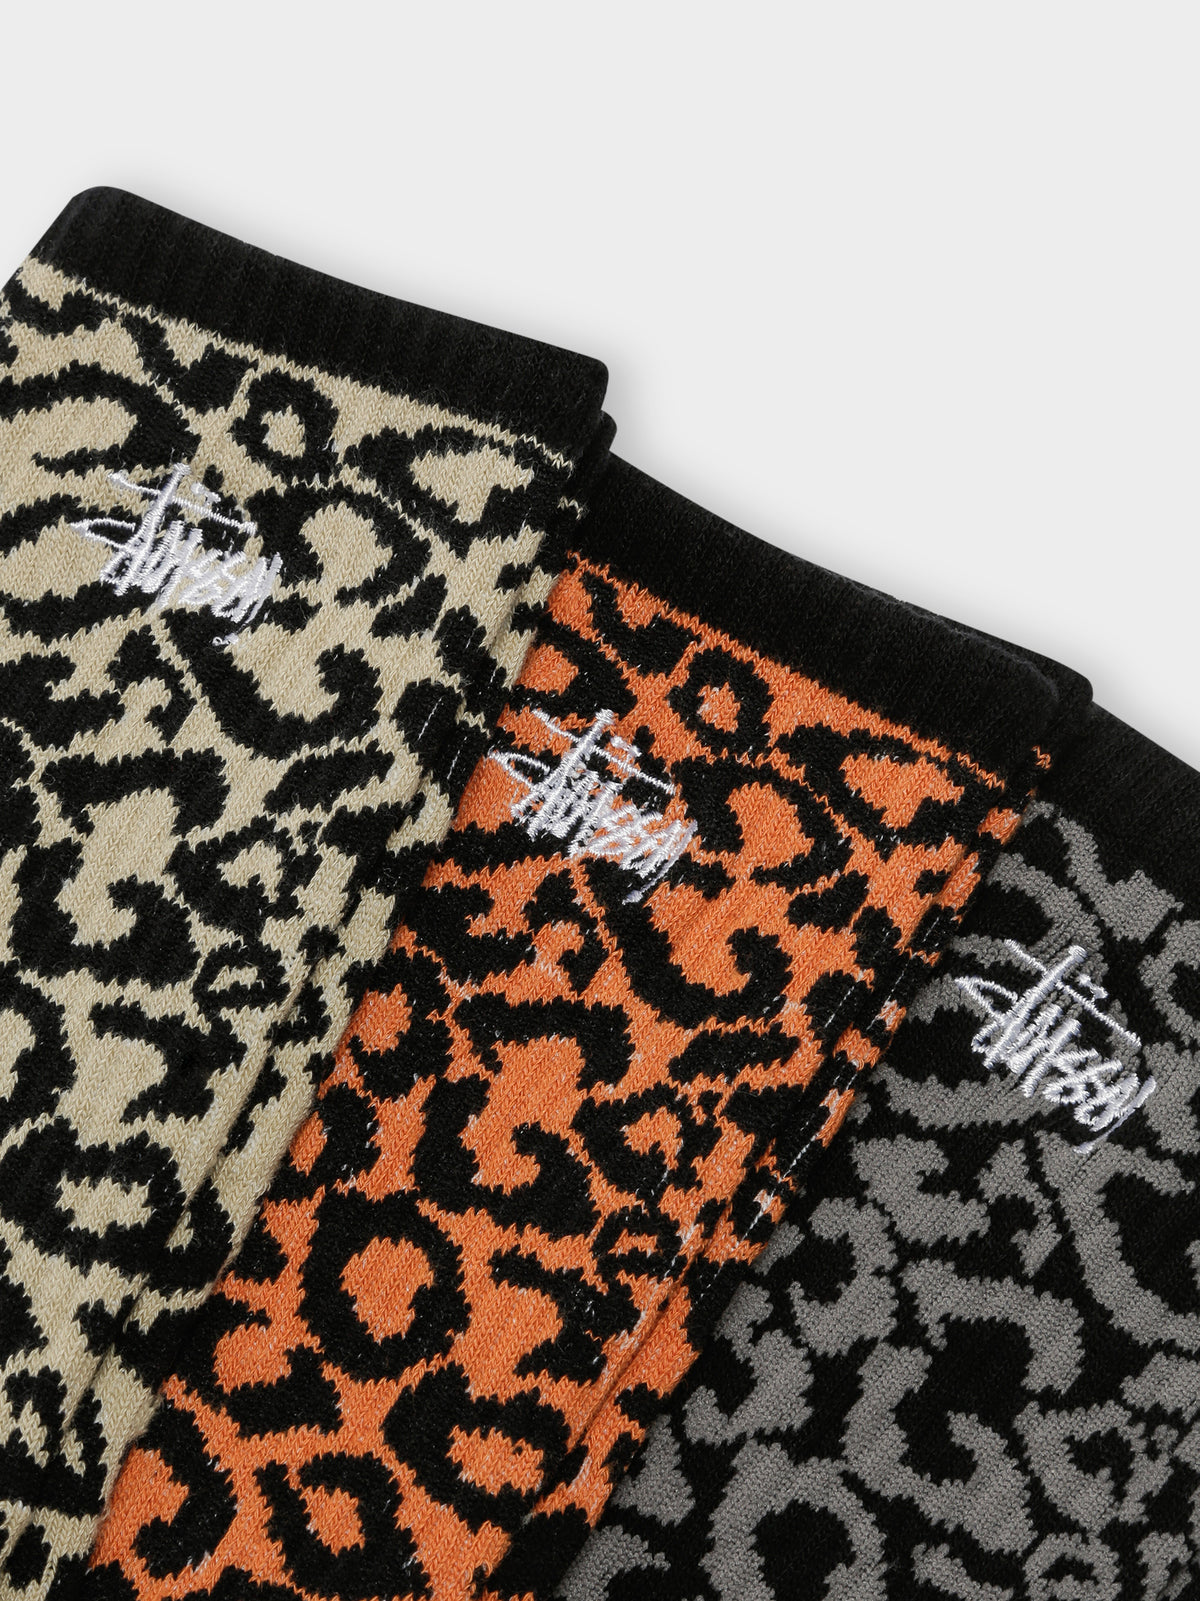 3 Pairs of Leopard Print Socks in Beige, Orange &amp; Grey